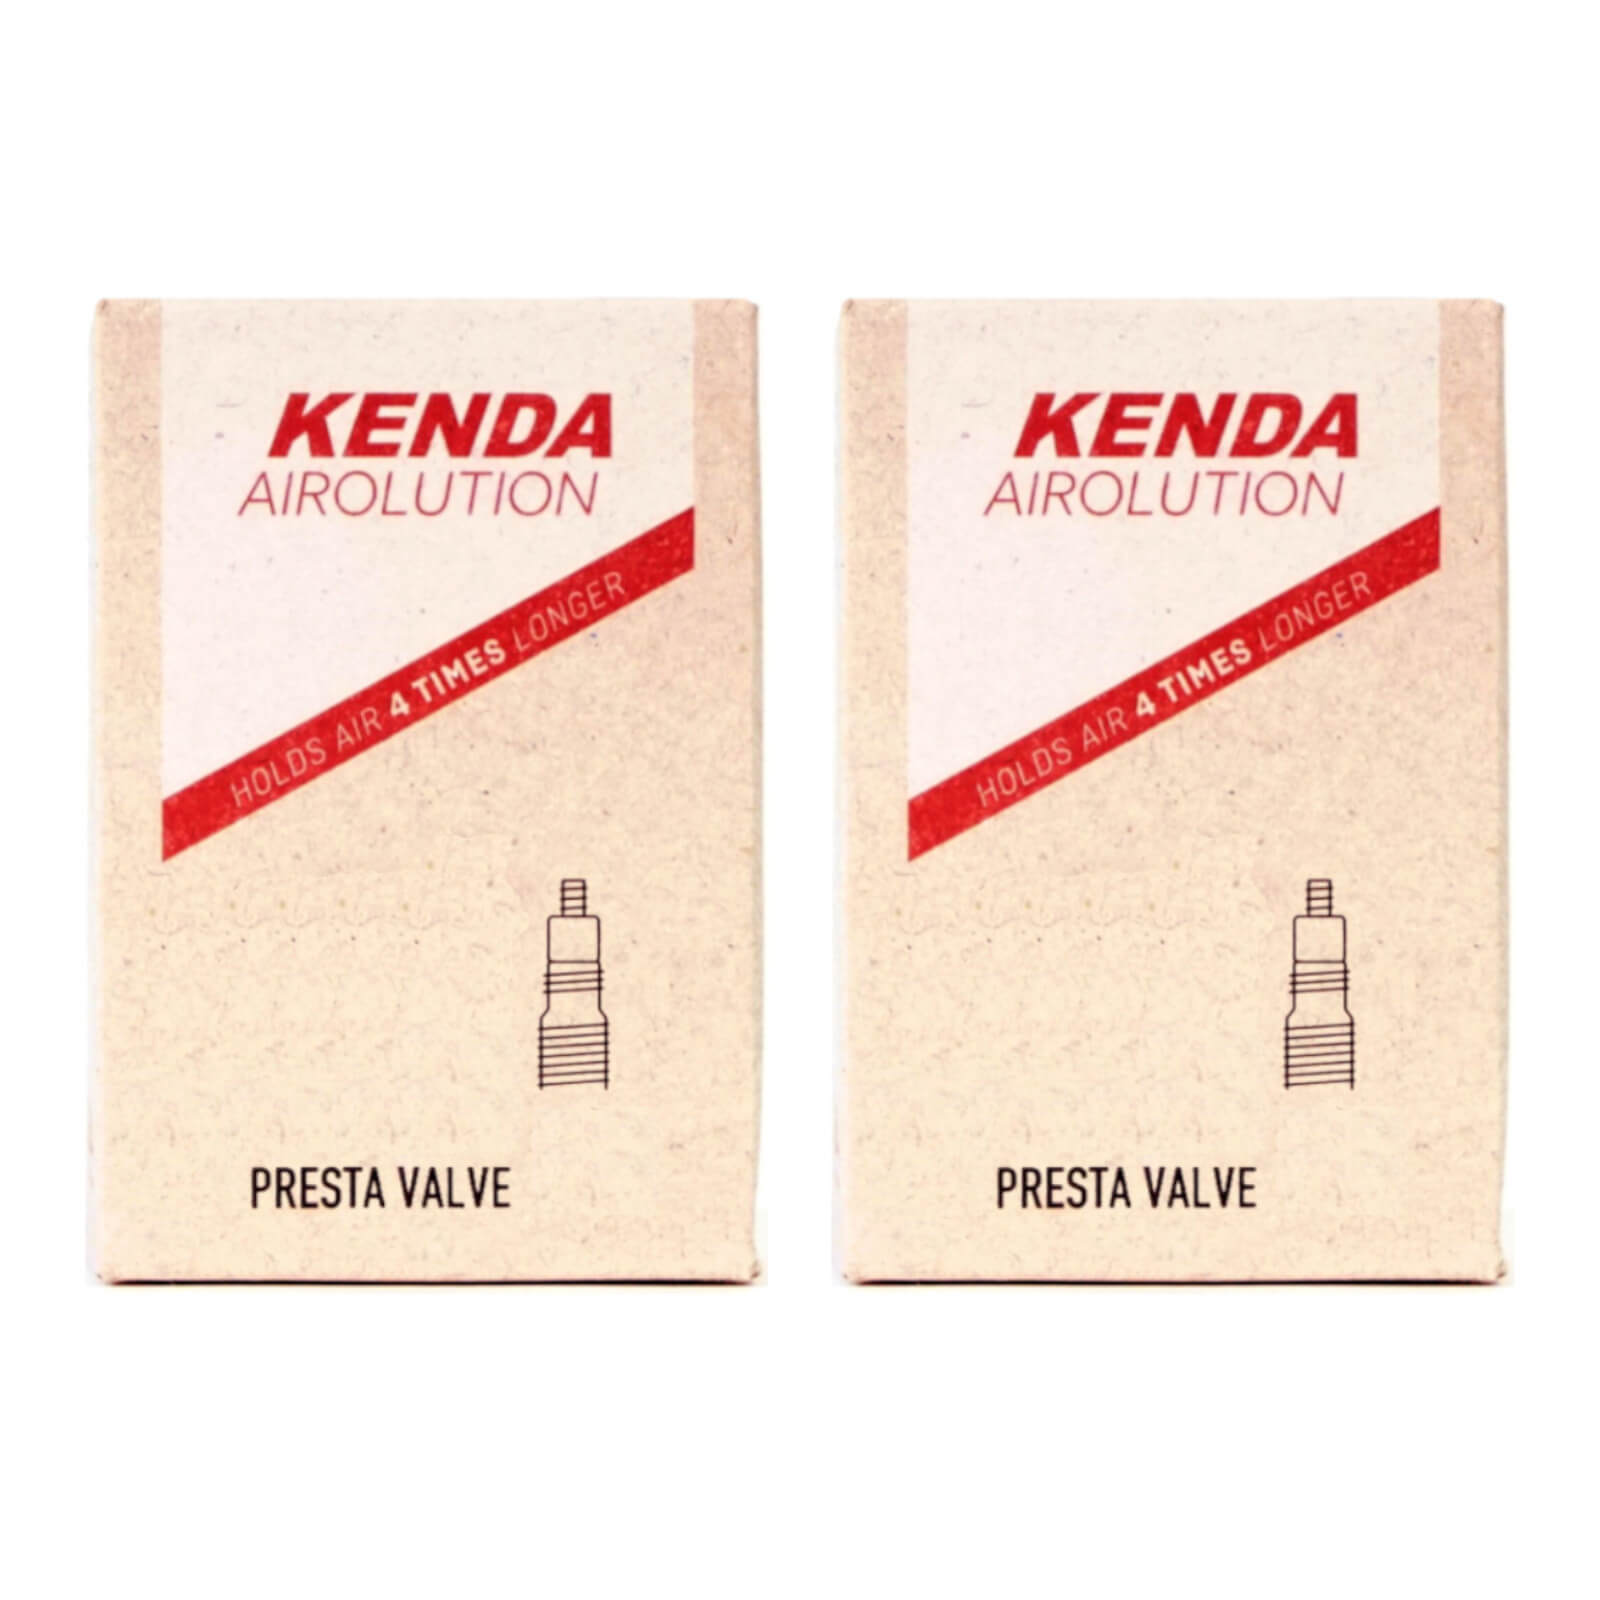 Kenda Airolution 700x30-43c 700c Presta Valve Bike Inner Tube Pack of 2